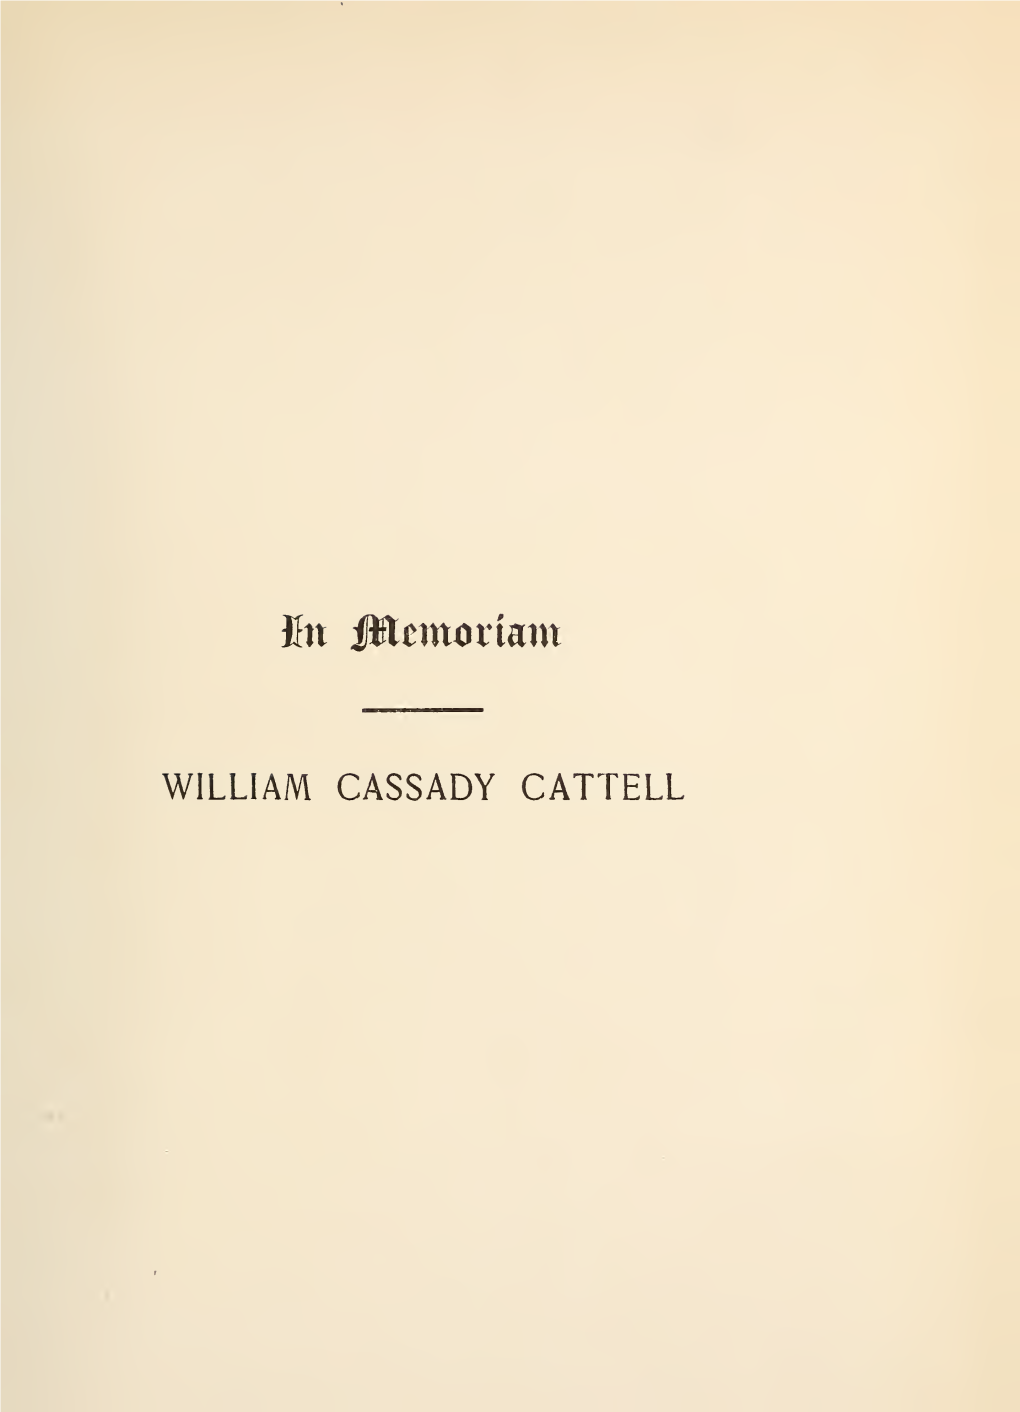 Memoir of William C. Cattell, D. D., LL. D. 1827-1898